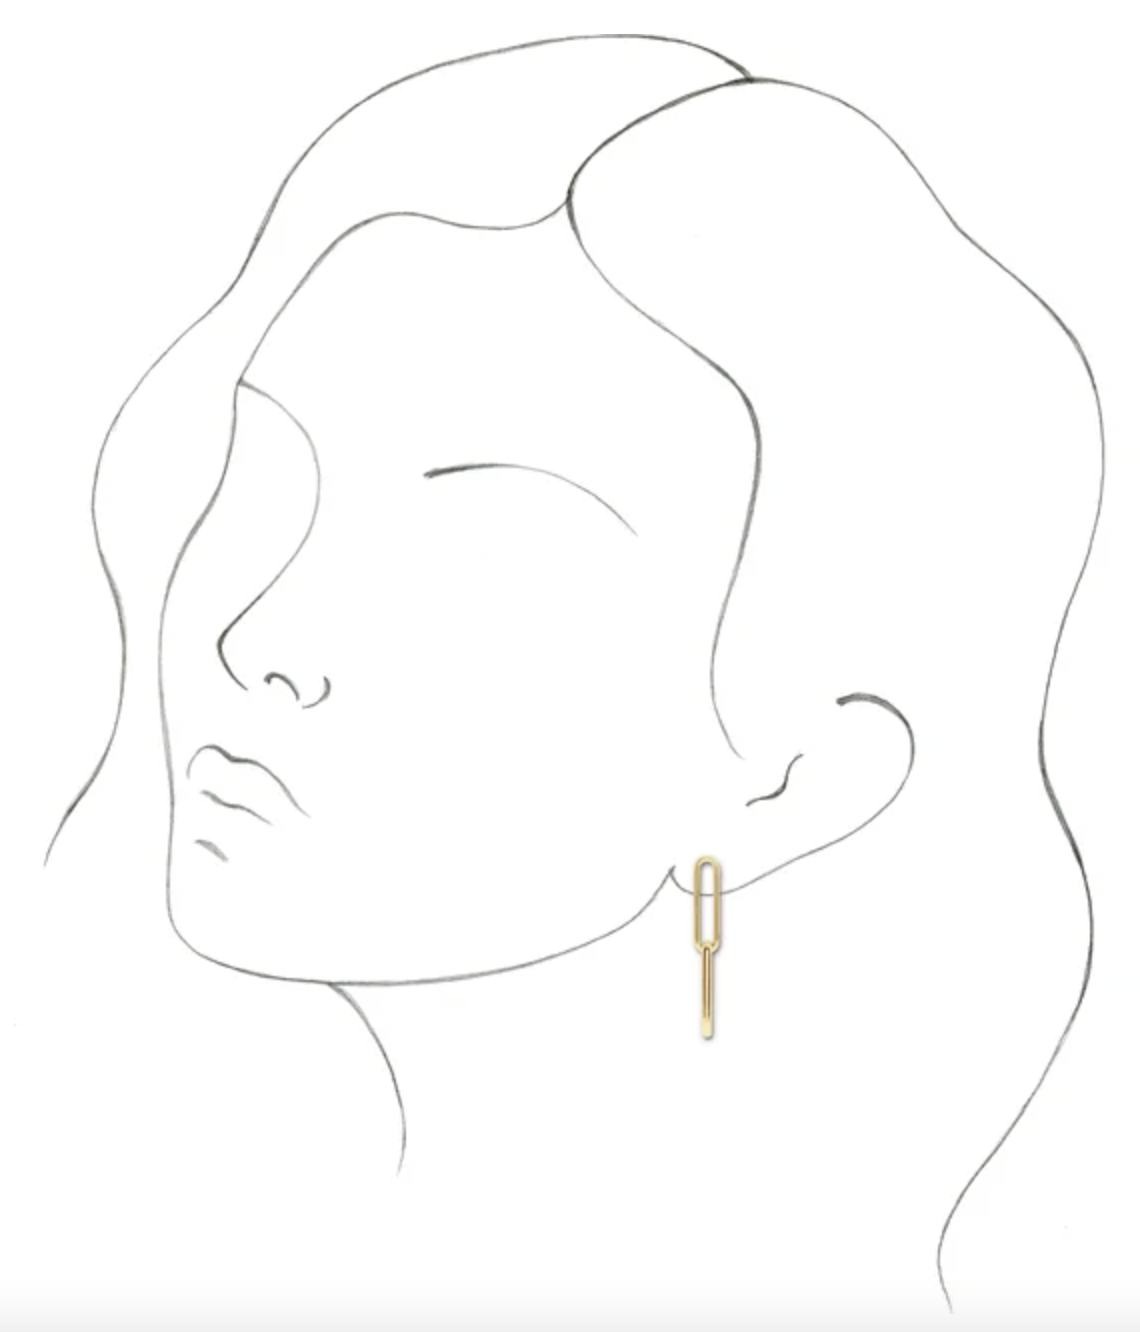 Gold Link Earrings